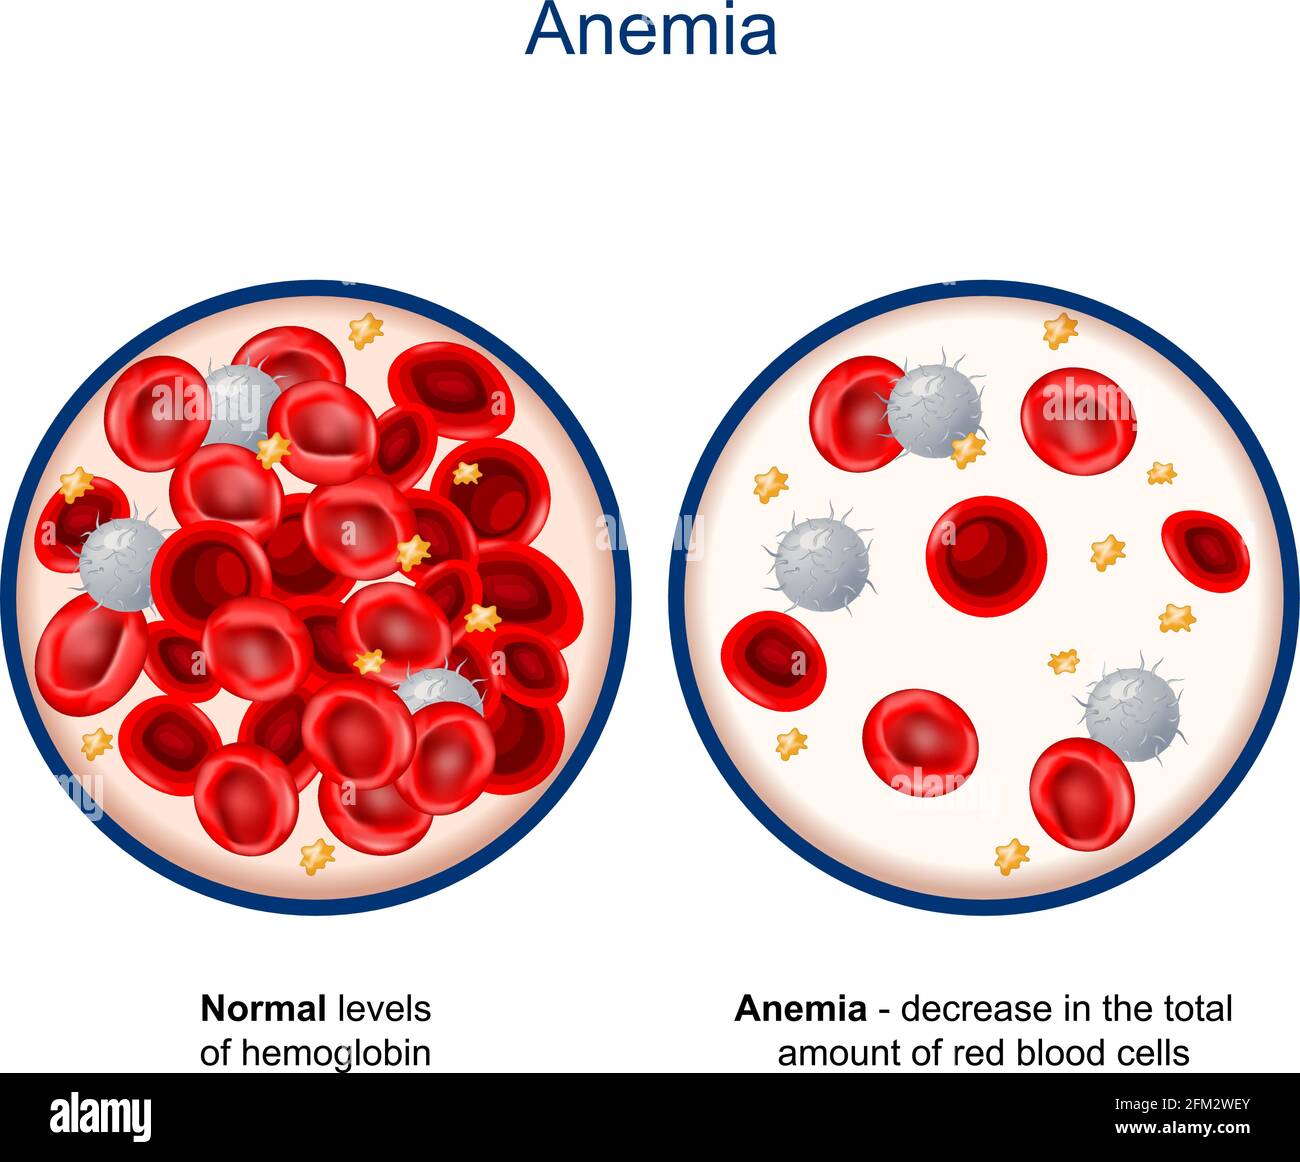 Anémie. Comparaison et différence entre les niveaux normaux d'hémoglobine et diminution de la quantité totale de globules rouges. Gros plan Illustration de Vecteur